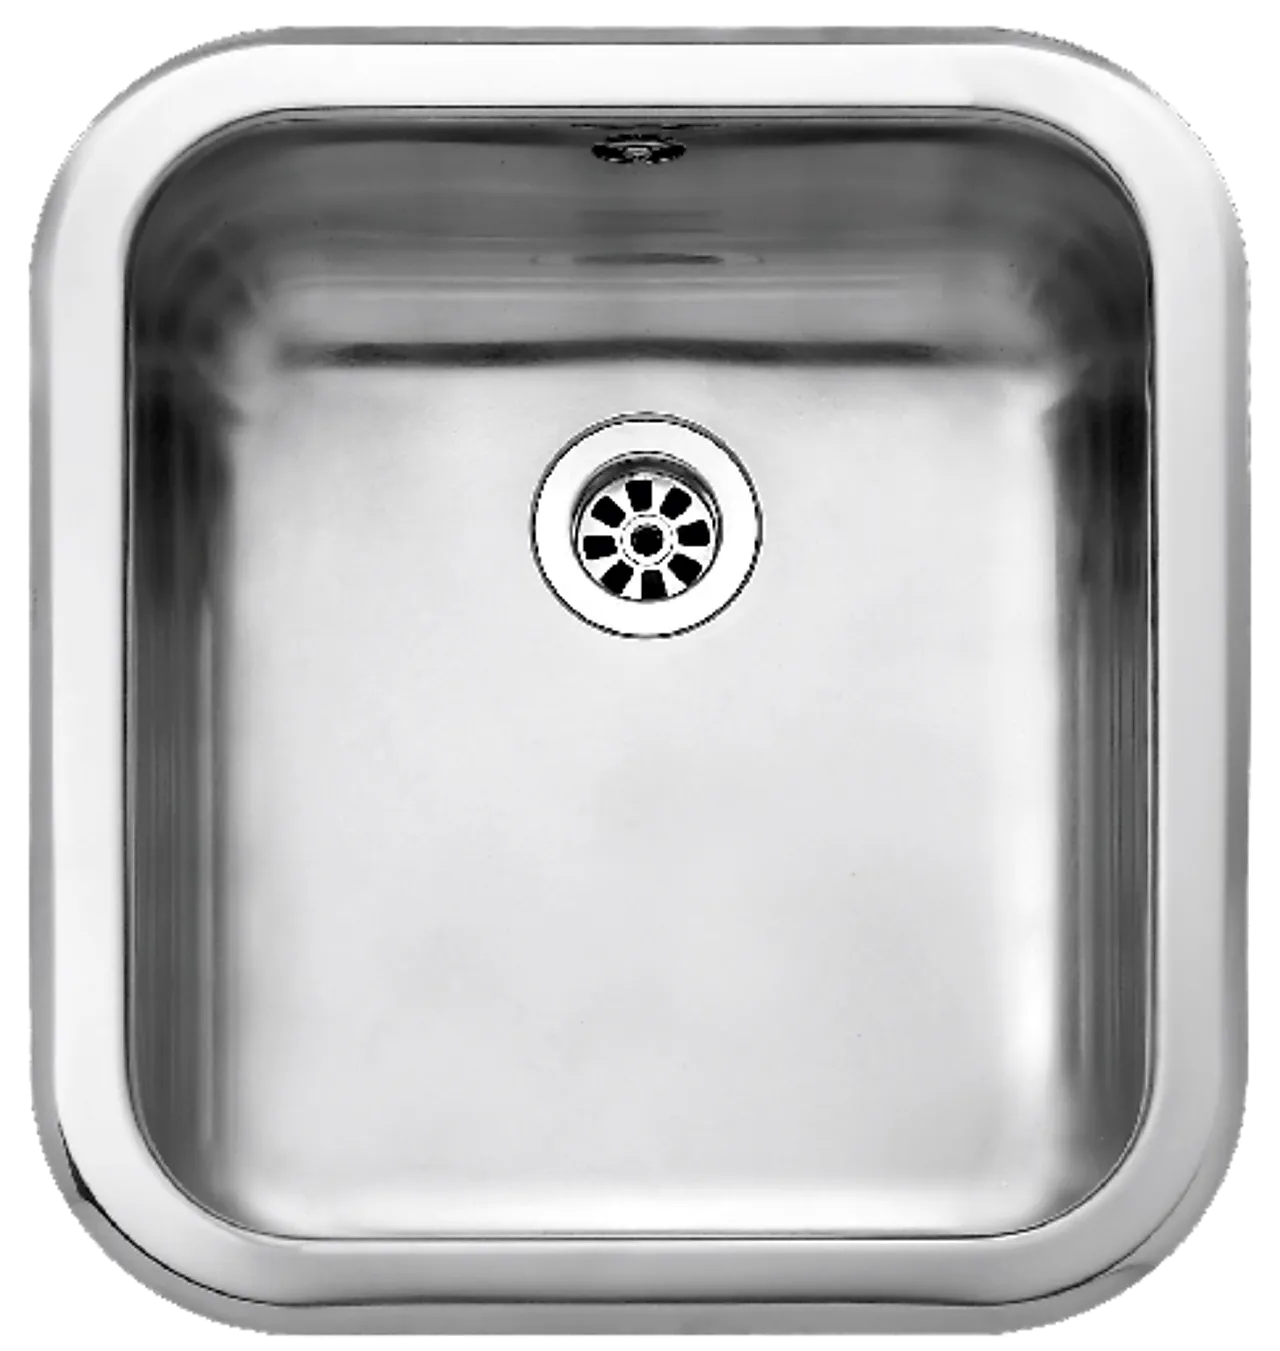 Kj.vask intra barents a 340 lev med kurvventil, overløp og vann